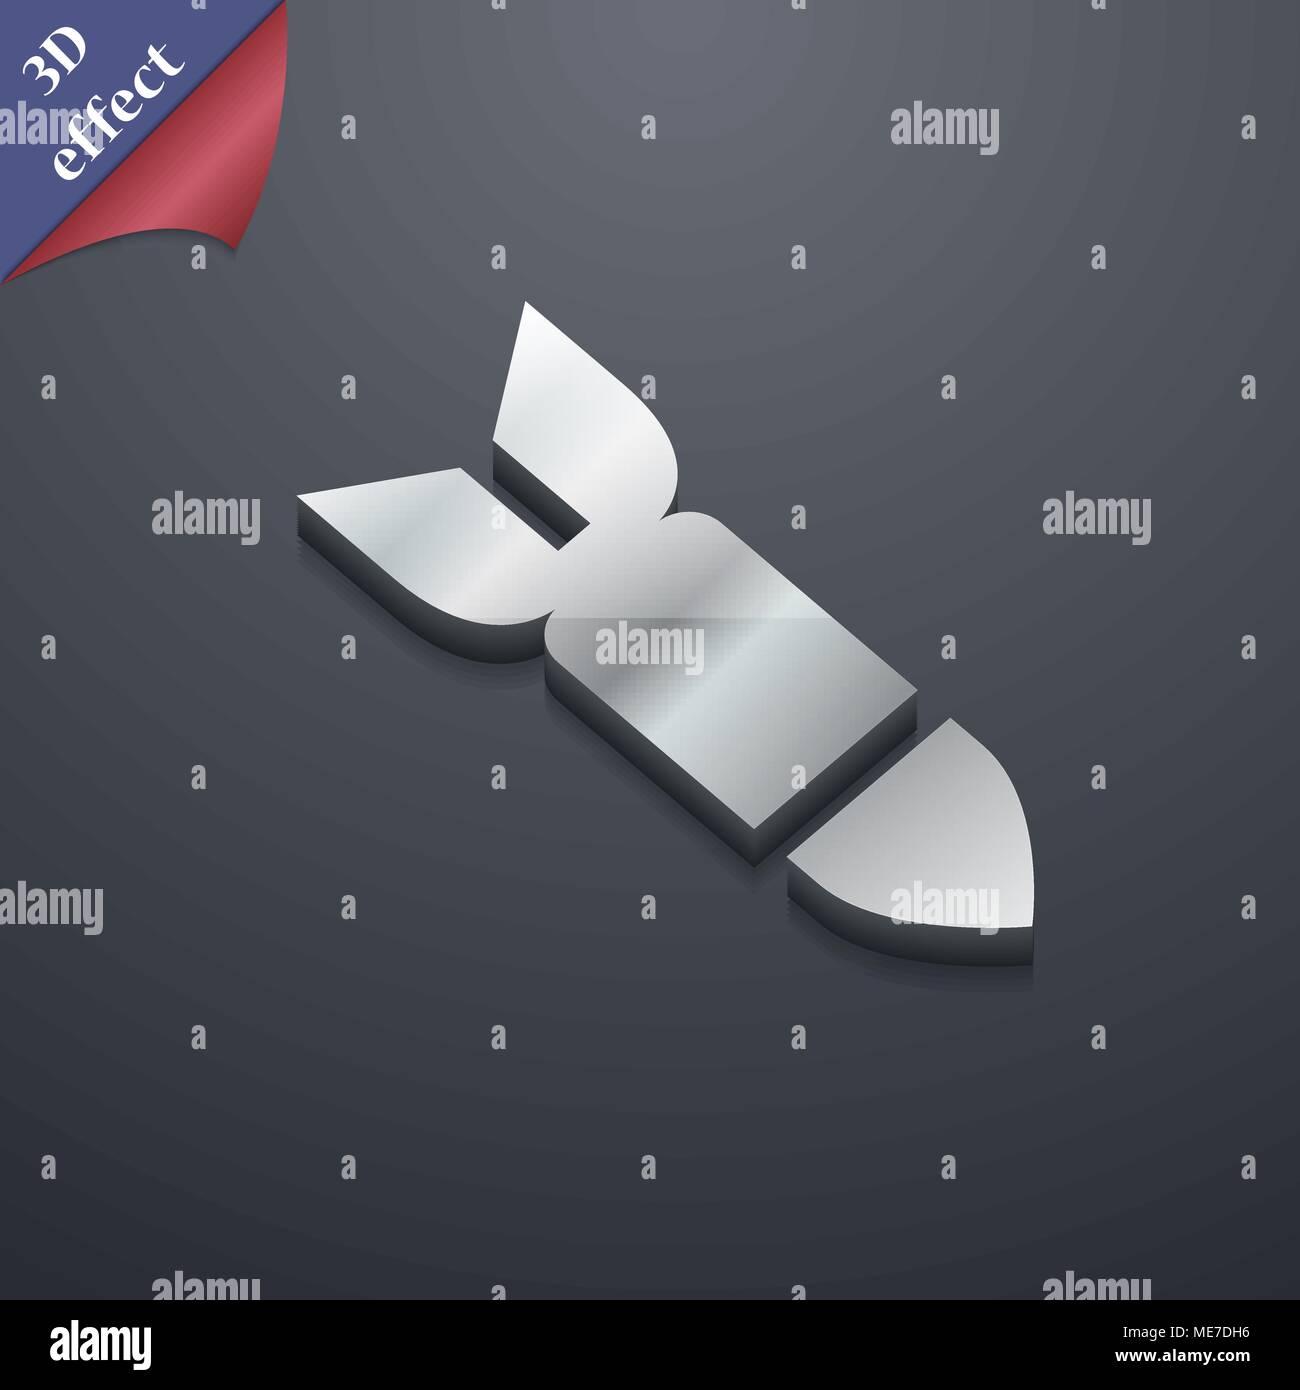 Rakete Rakete Waffe Symbol. 3D-Stil. Schickes, modernes Design mit Platz für Ihren Text Vector Illustration Stock Vektor